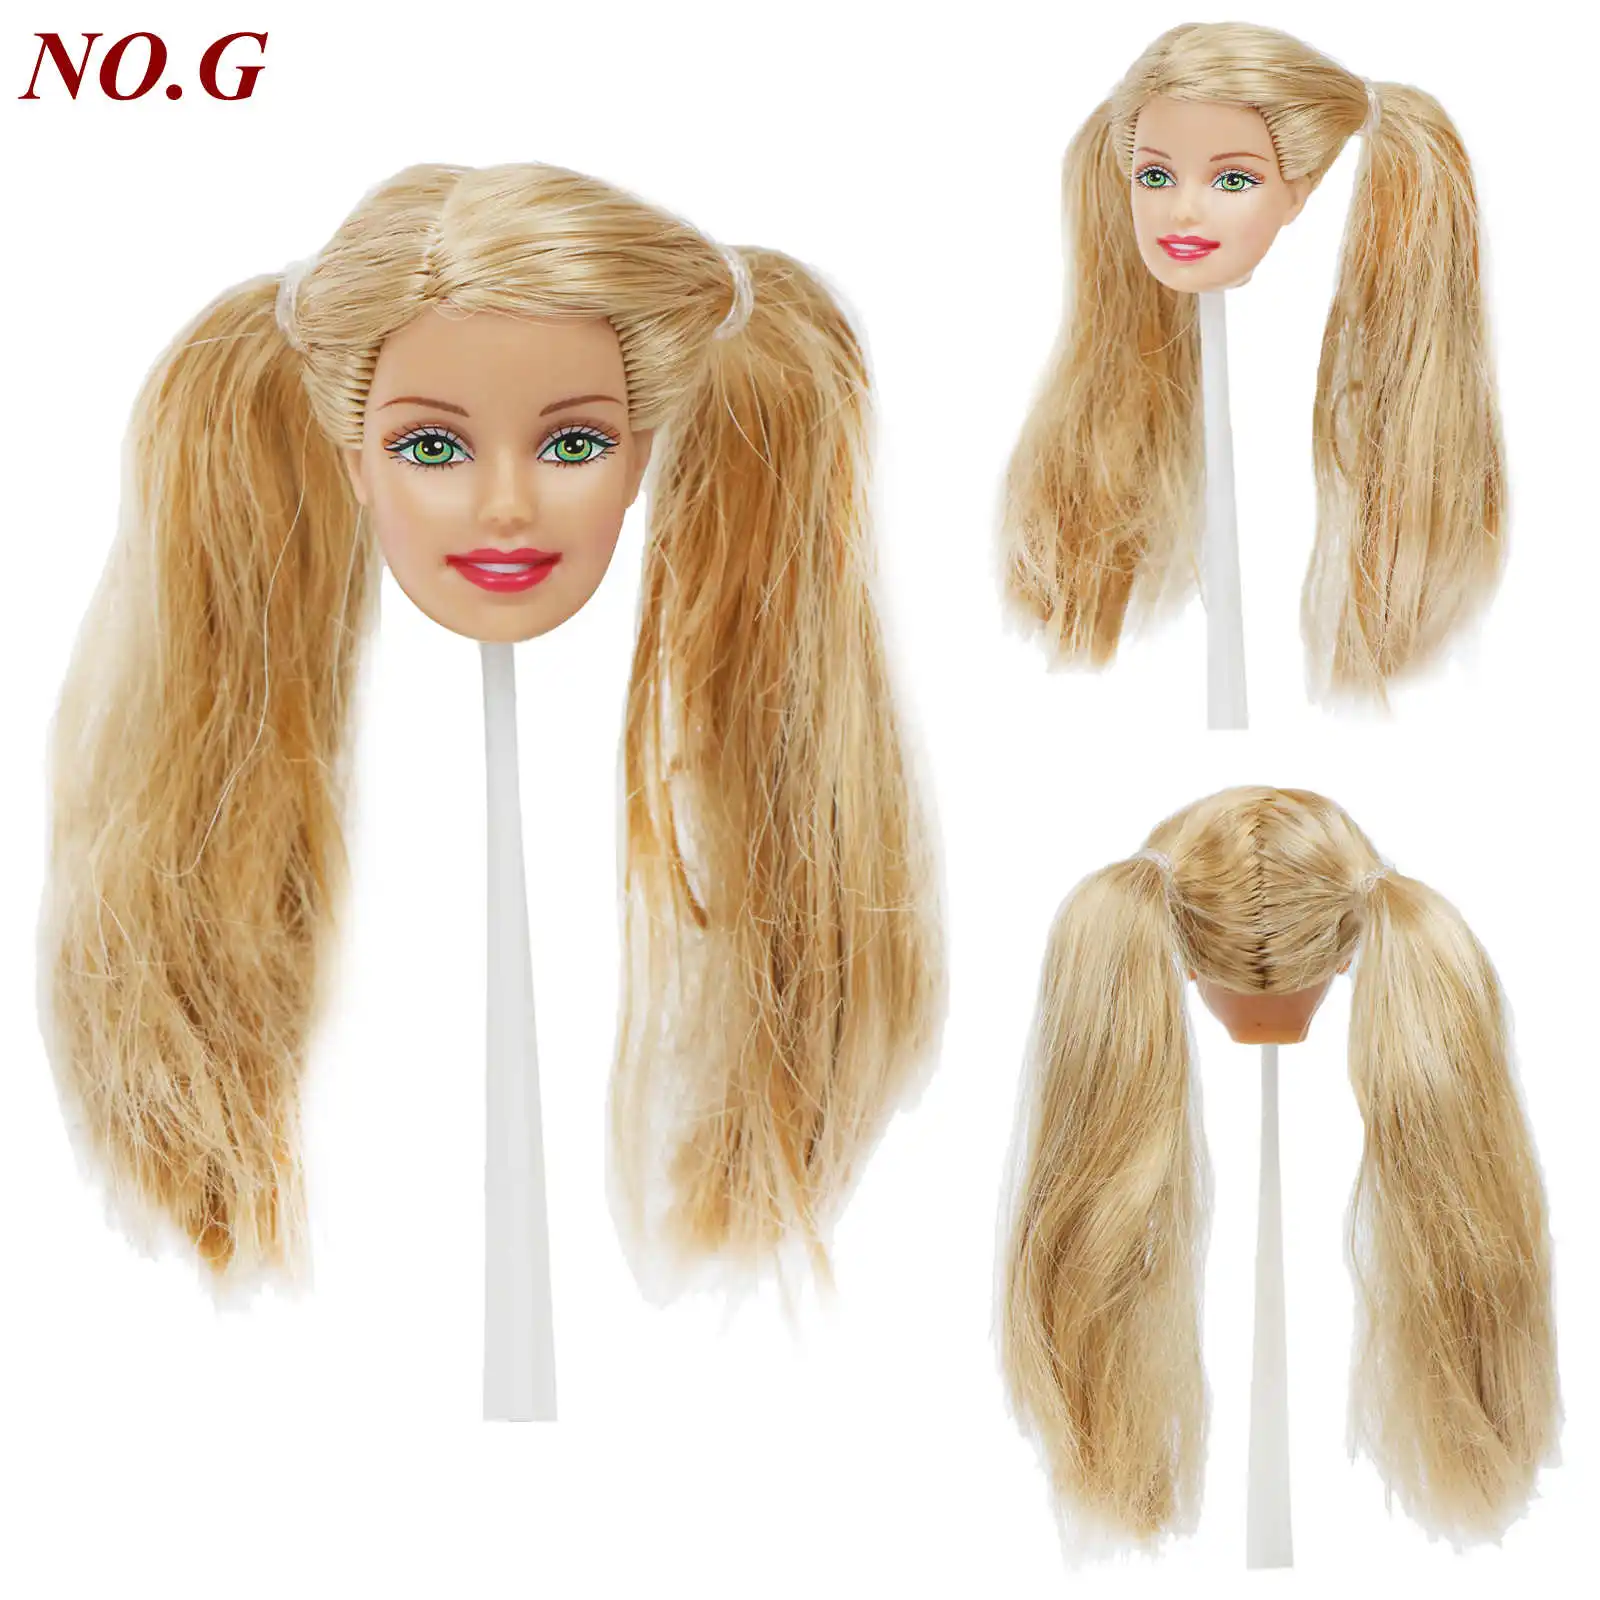 Отличное качество голова куклы разное лицо прямые вьющиеся волосы с модными случайными серьгами DIY аксессуары для 1" игрушки куклы